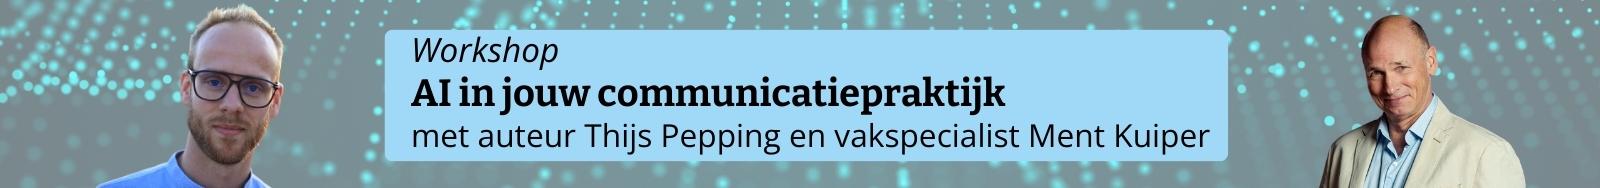 Workshop AI in jouw communicatiepraktijk met auteur Thijs Pepping en vakspecialist Ment Kuiper (1)